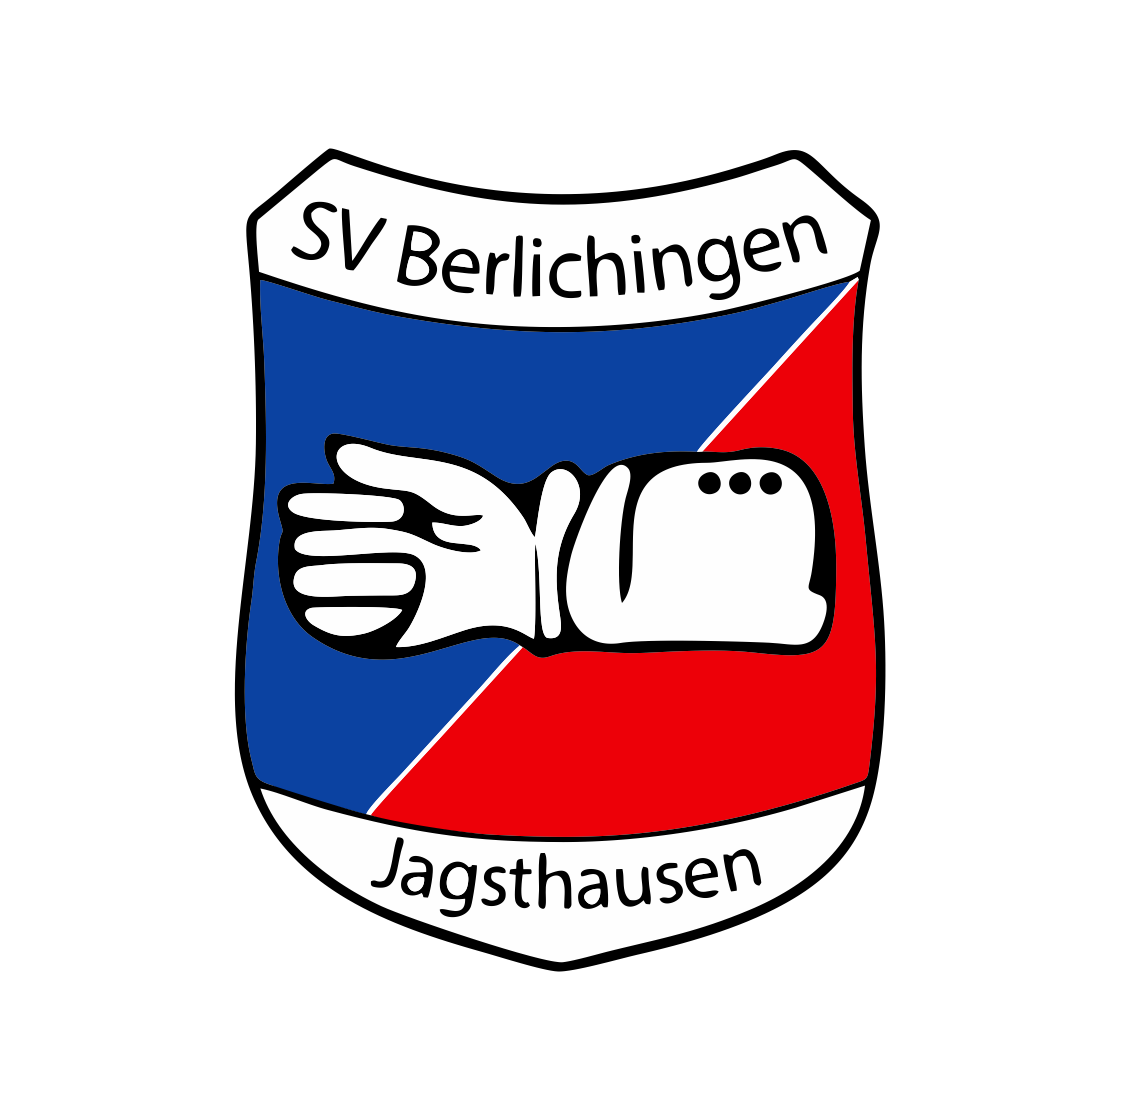 SV Berlichingen Jagsthausen